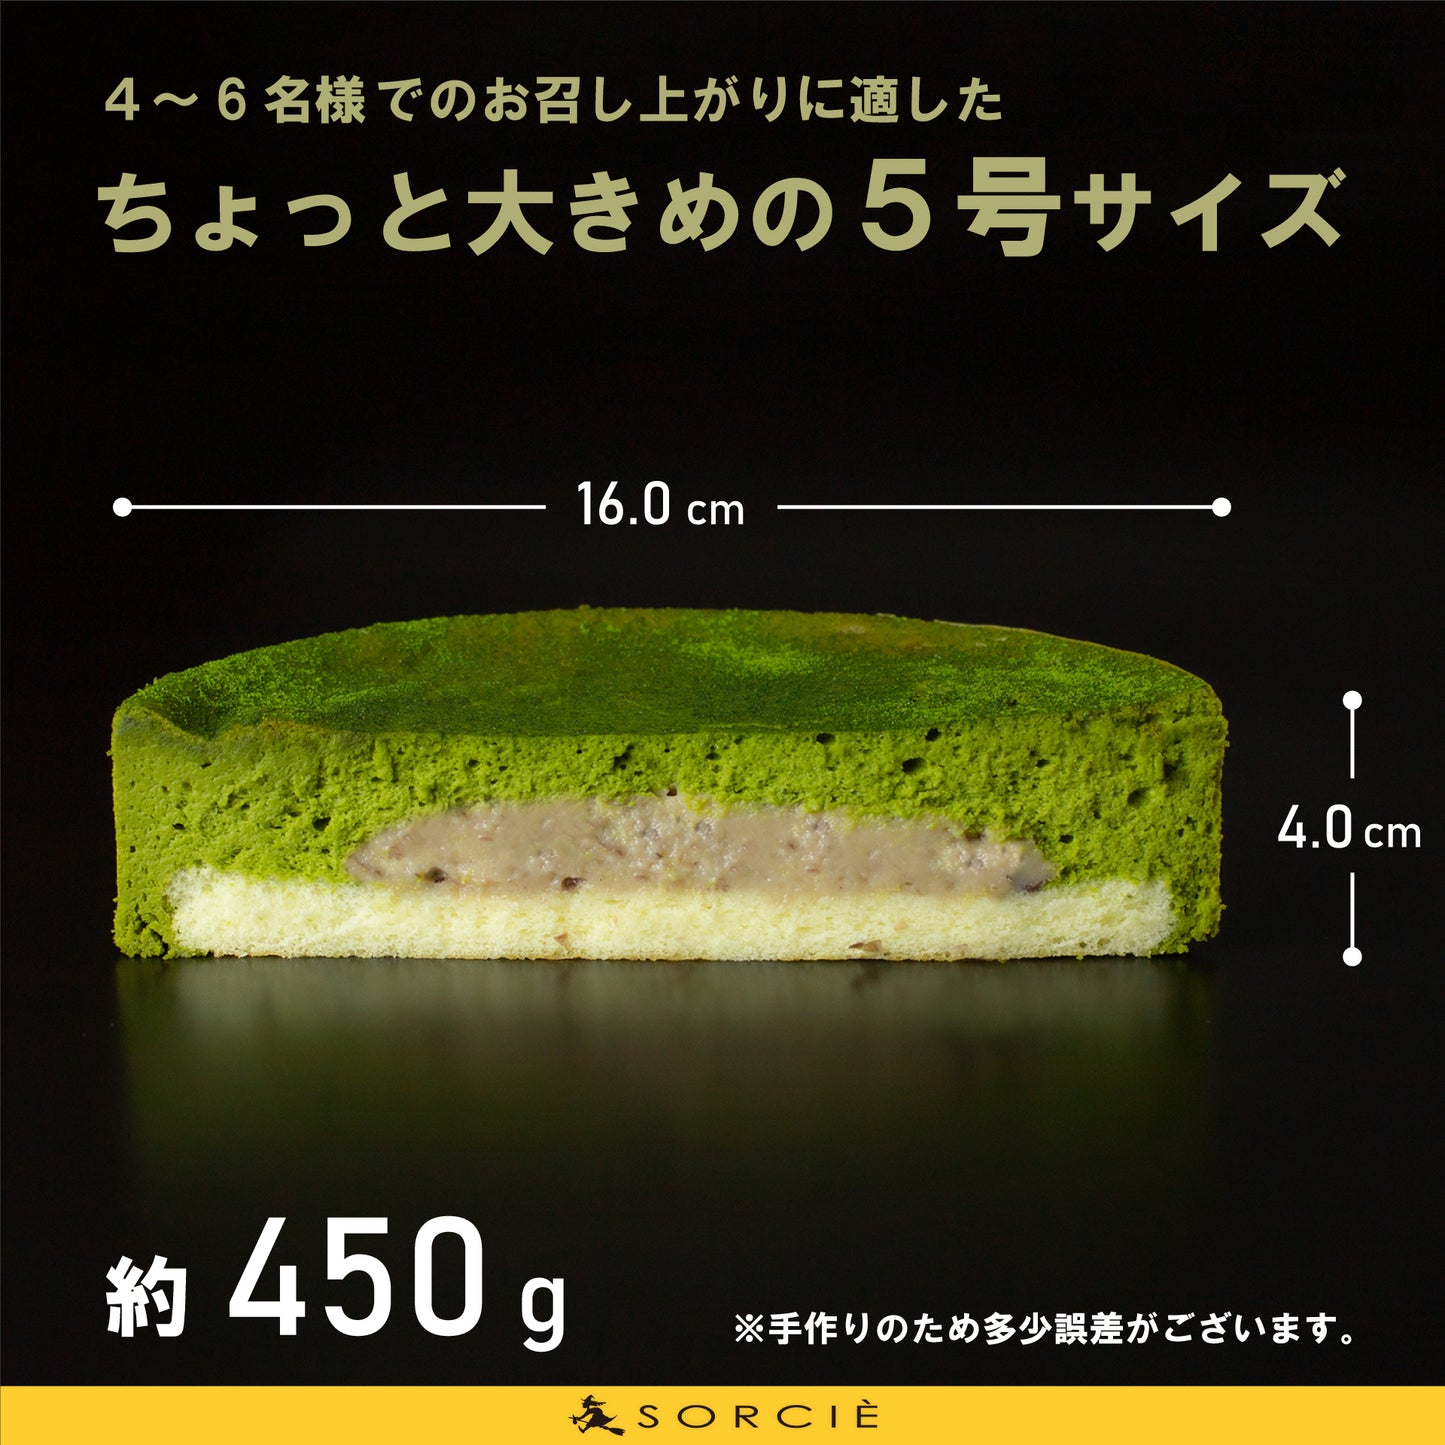 【店舗受取】濃厚抹茶ベイクド チーズケーキ 5号 直径16cm 4人～6人分 約450g